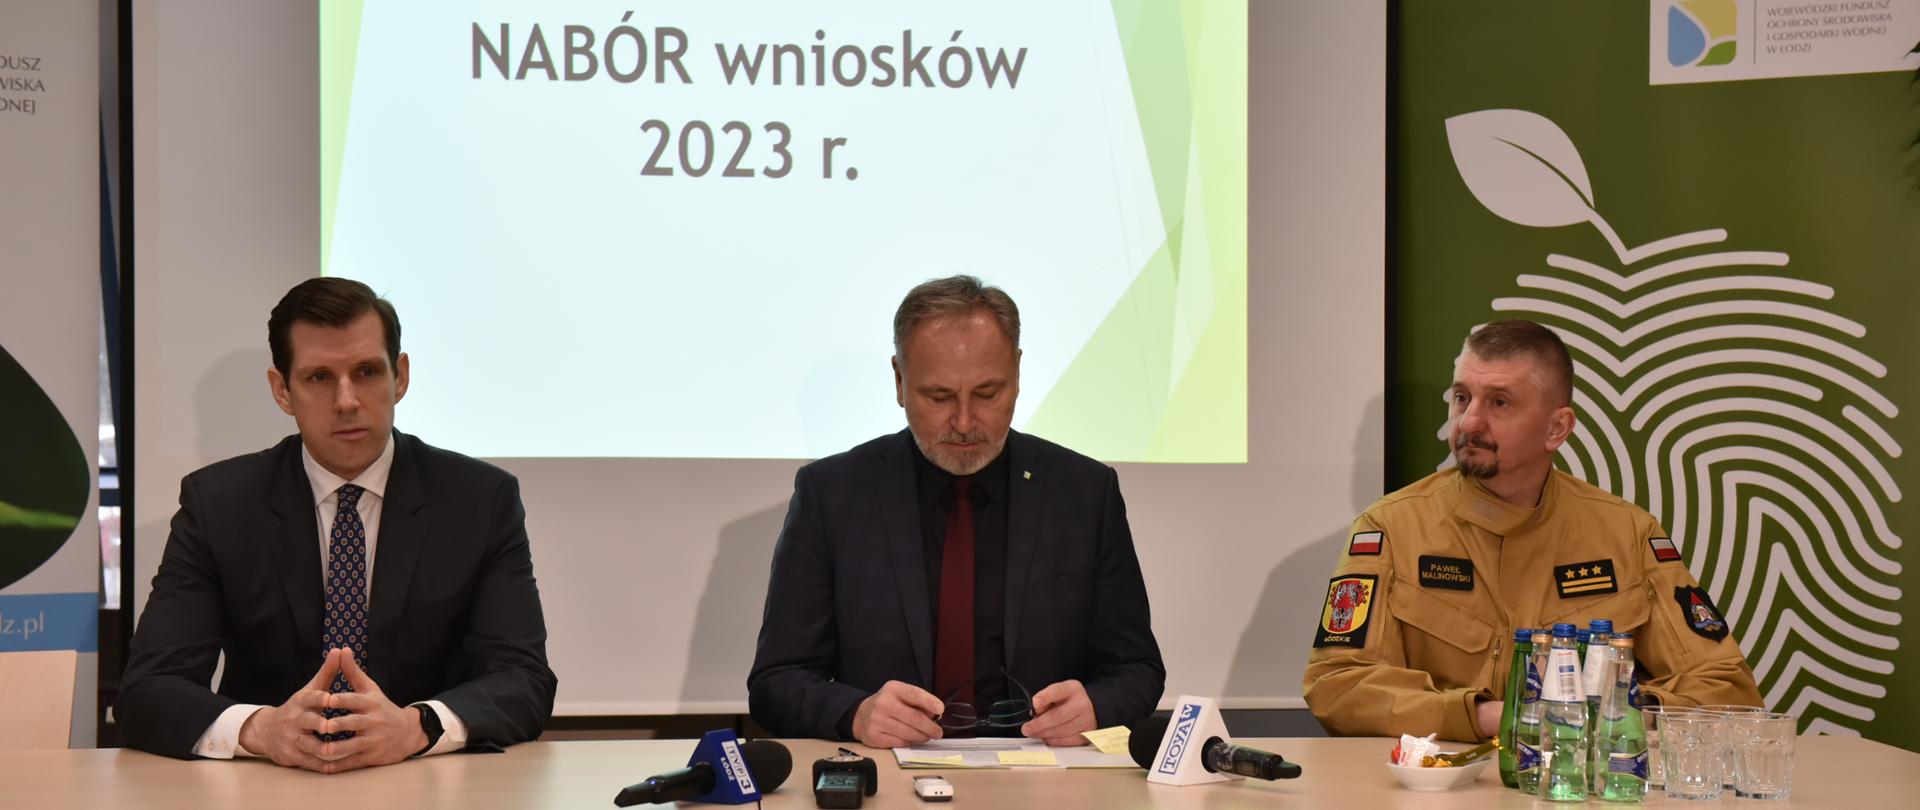 od lewej Tobiasz Bocheński, Wojciech Miedzianowski st. bryg. Paweł Malinowski siedzą przy stole w czasie briefingu prasowego